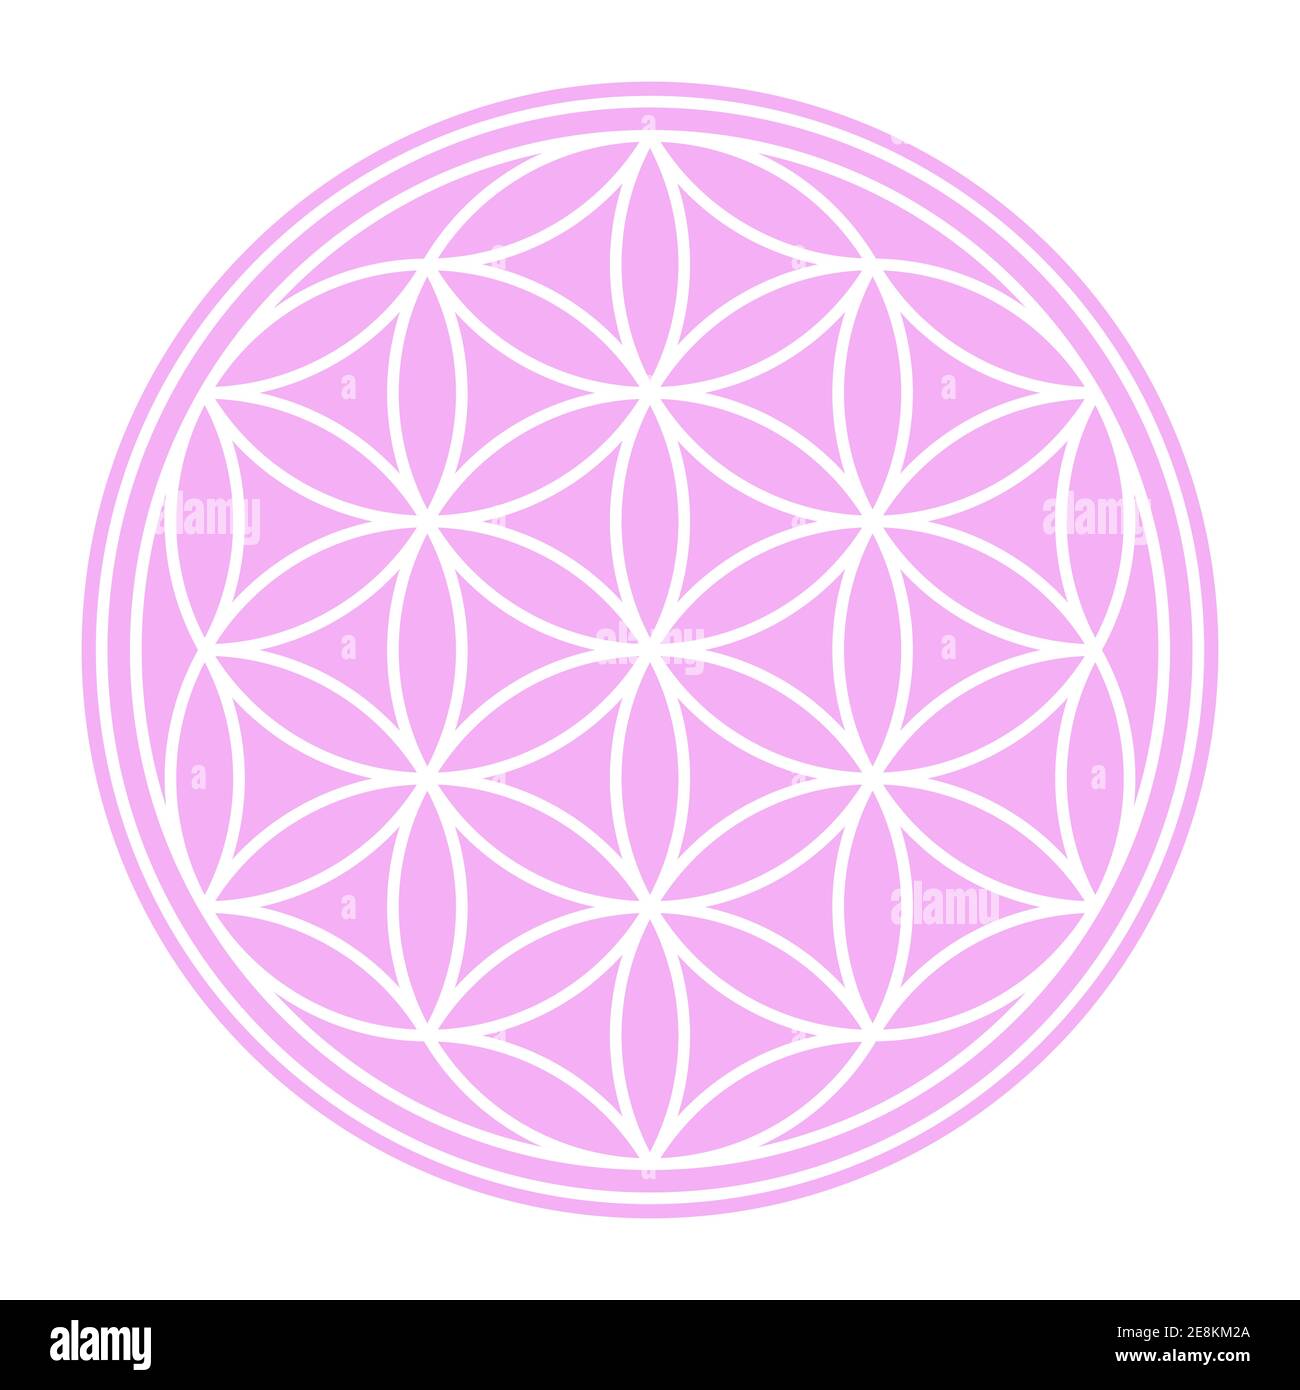 White Seed of Life sur terrain circulaire rose pastel. Une figure géométrique et un symbole spirituel de la géométrie sacrée. Cercles se chevauchant formant une fleur. Banque D'Images